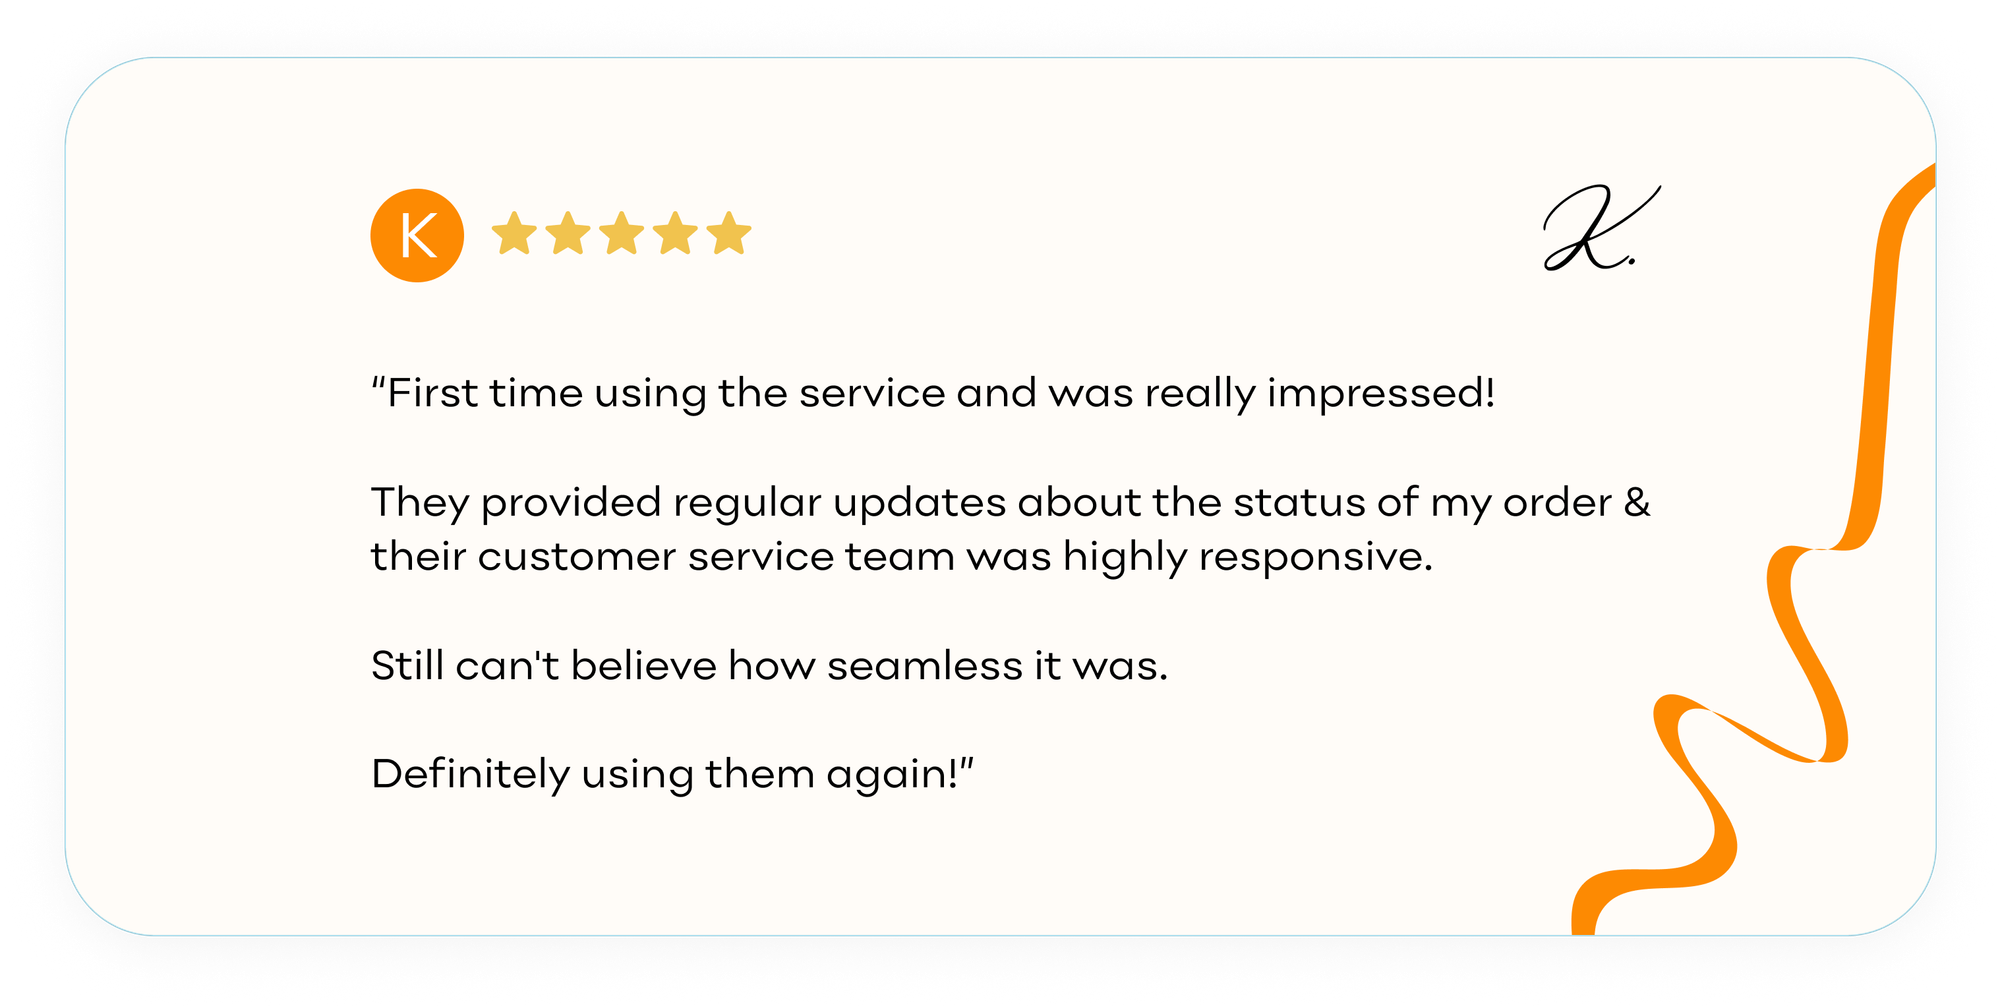 Customer review on Heroshe's service